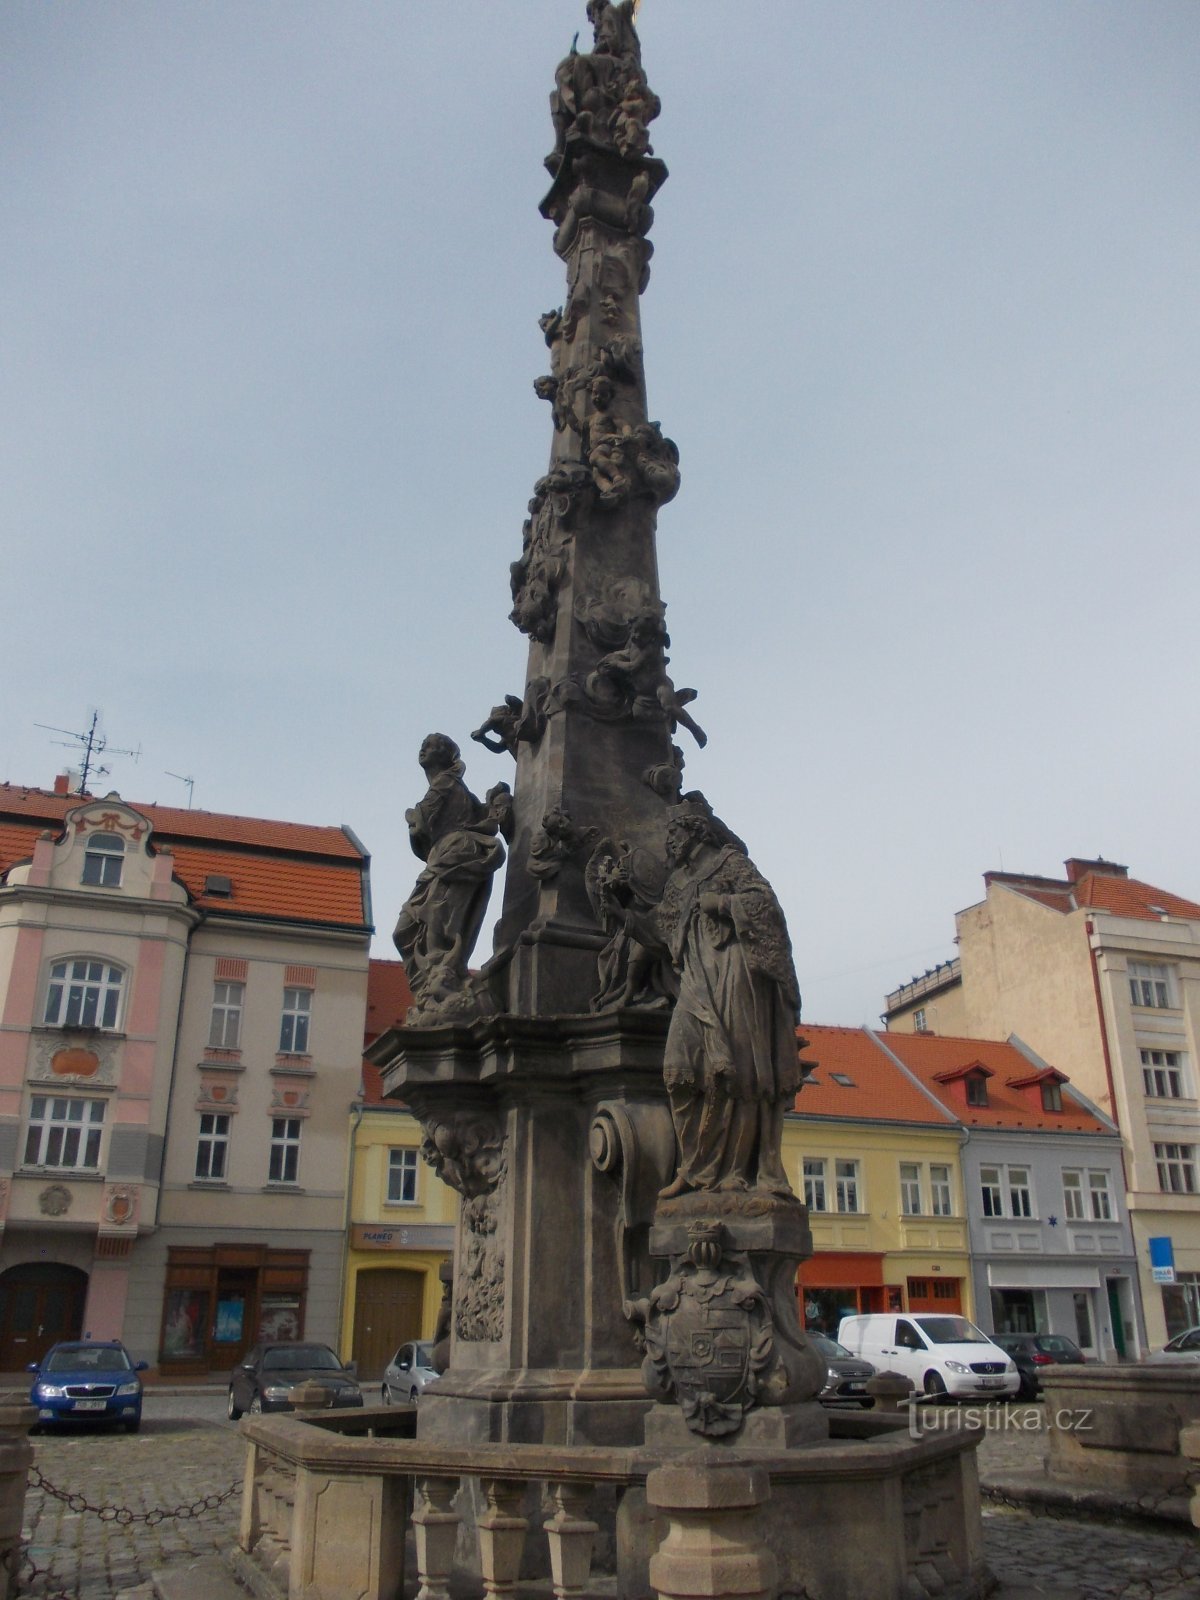 baroque column in the square